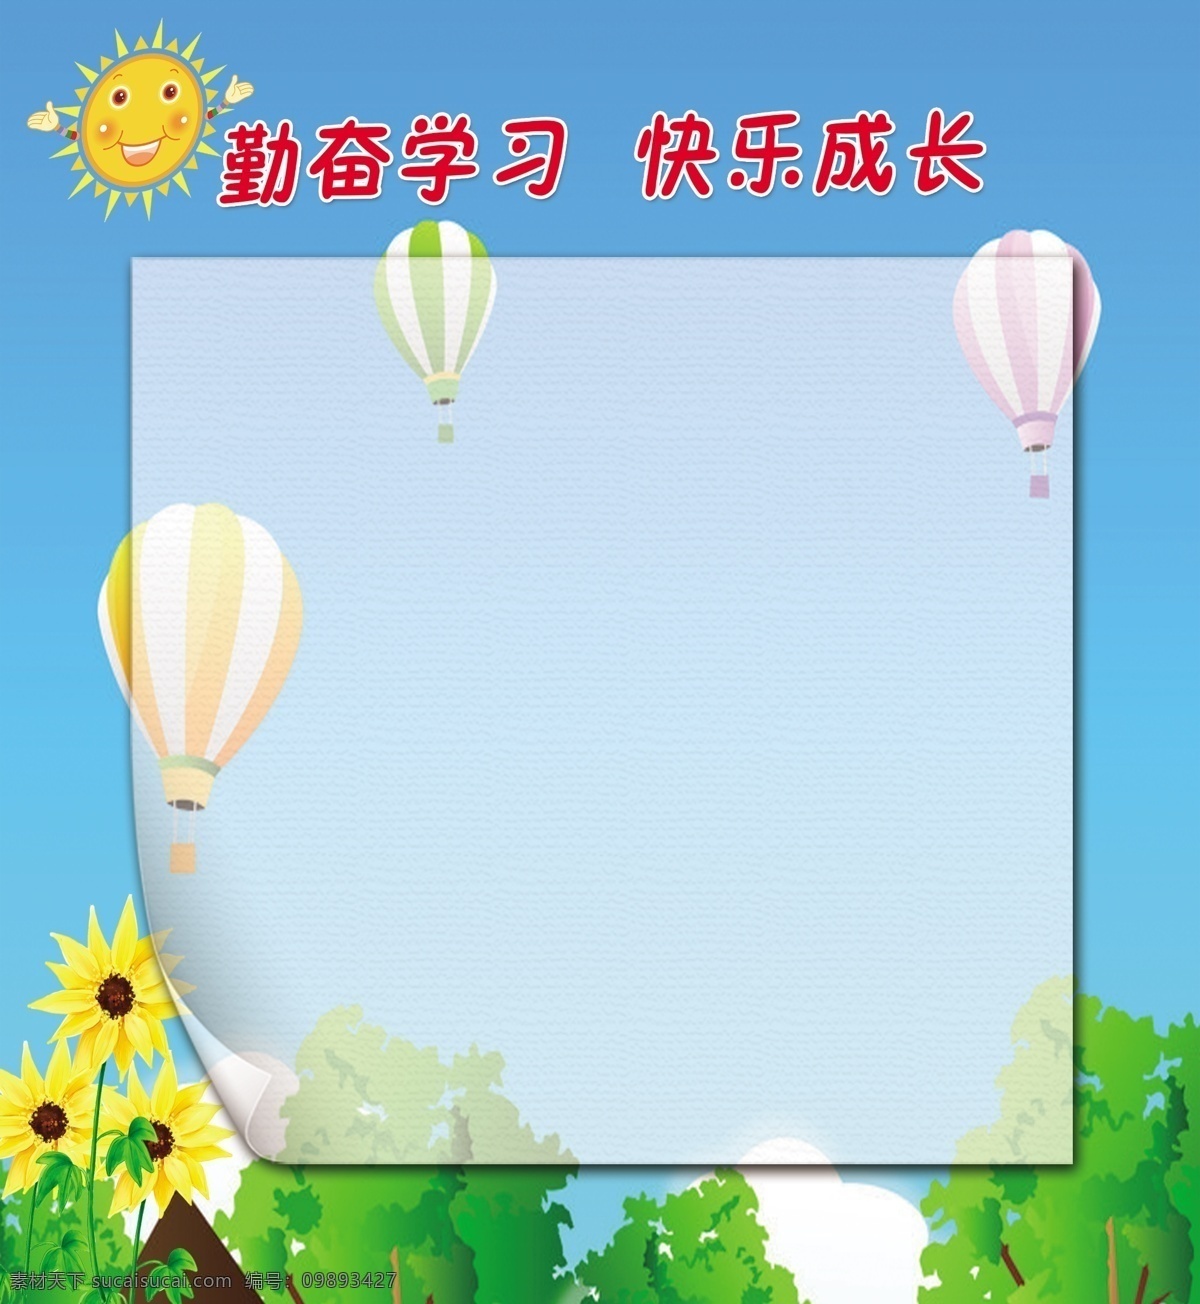 小学展板 幼儿园展牌 小学背景墙 卡通背景 热气球 太阳 向日葵 勤奋学习 快乐成长 青色 天蓝色